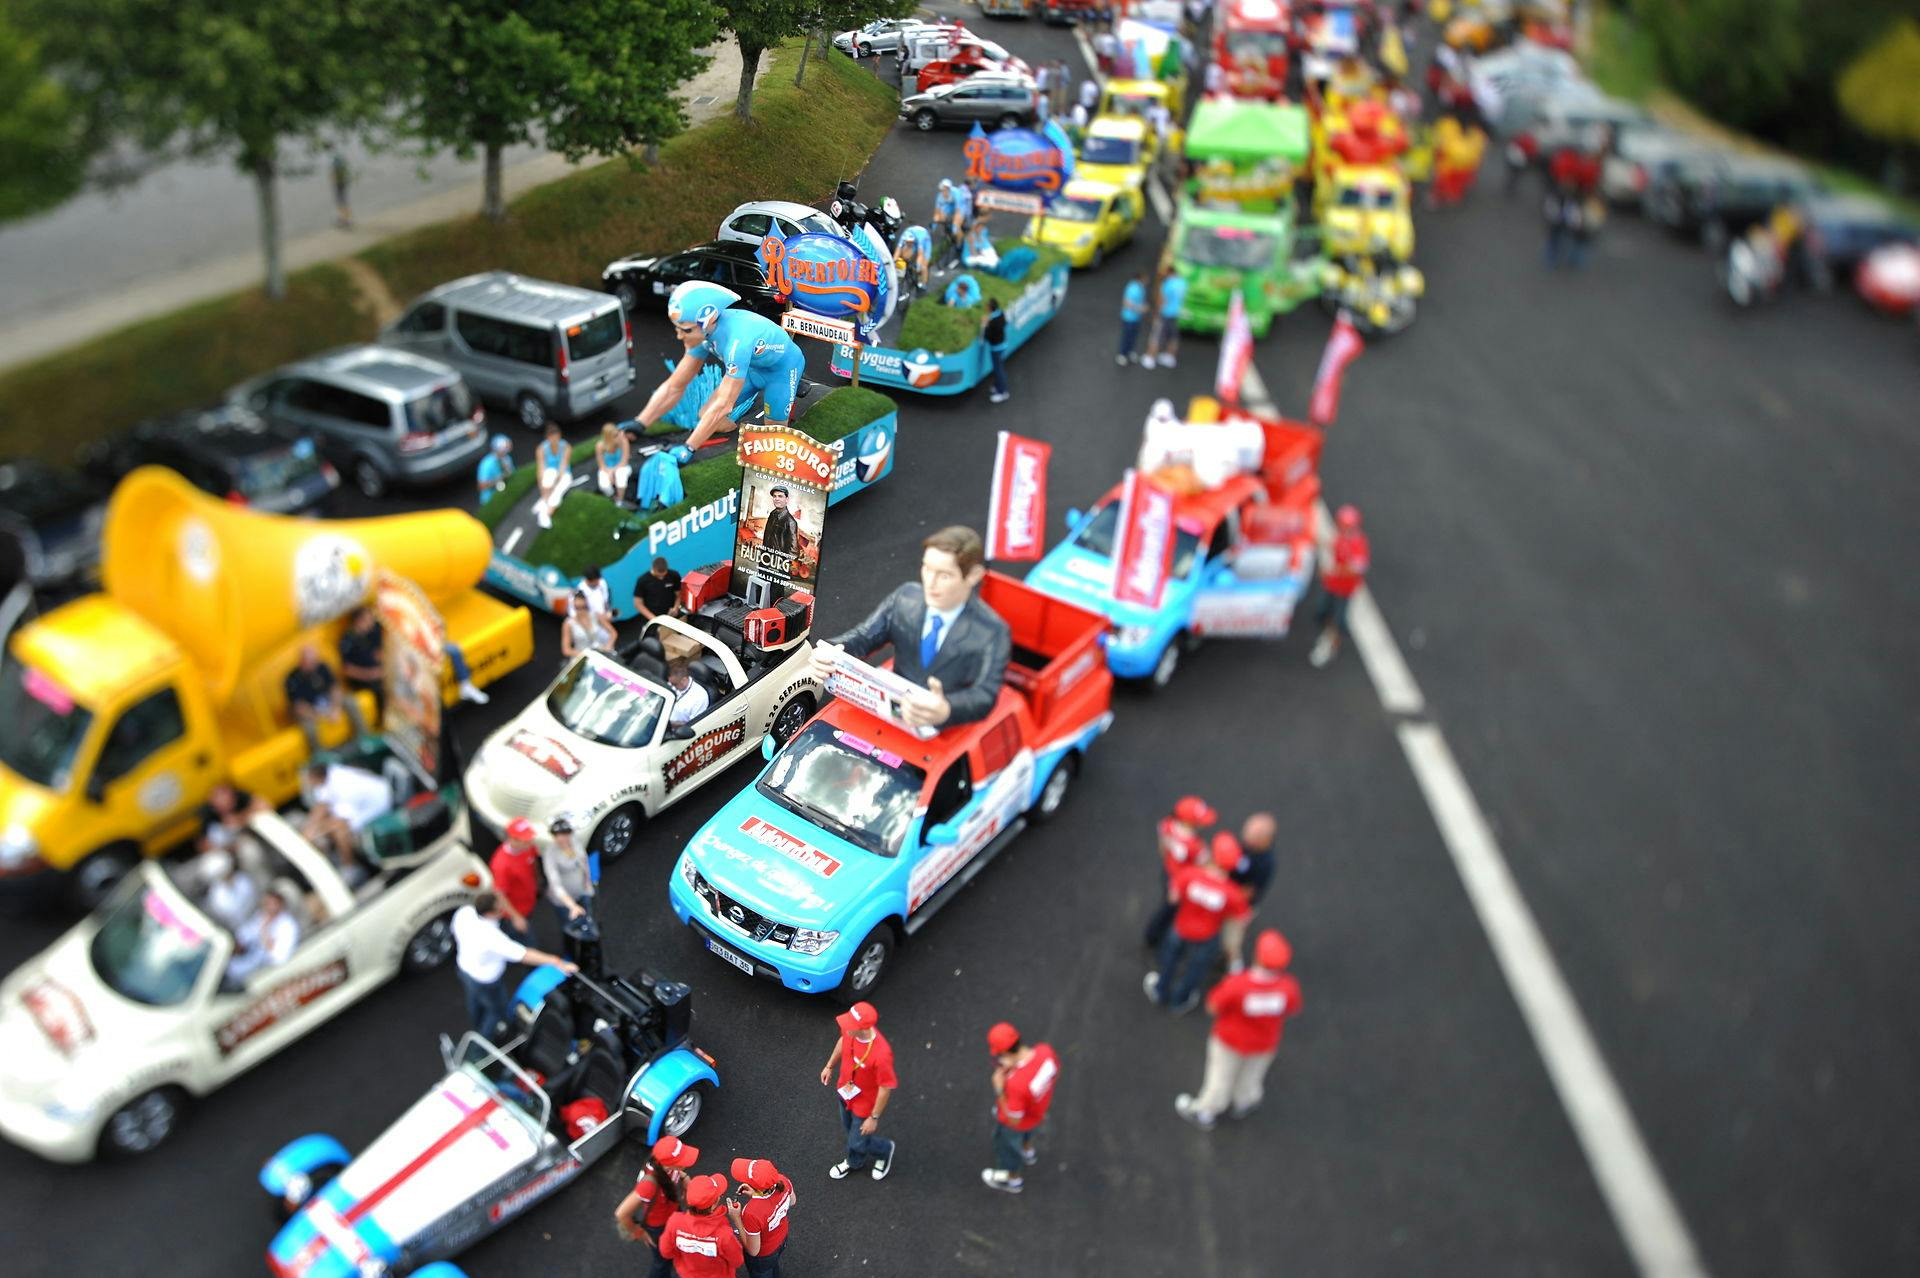 Gaveregn under Tour de France venter danske tilskuere